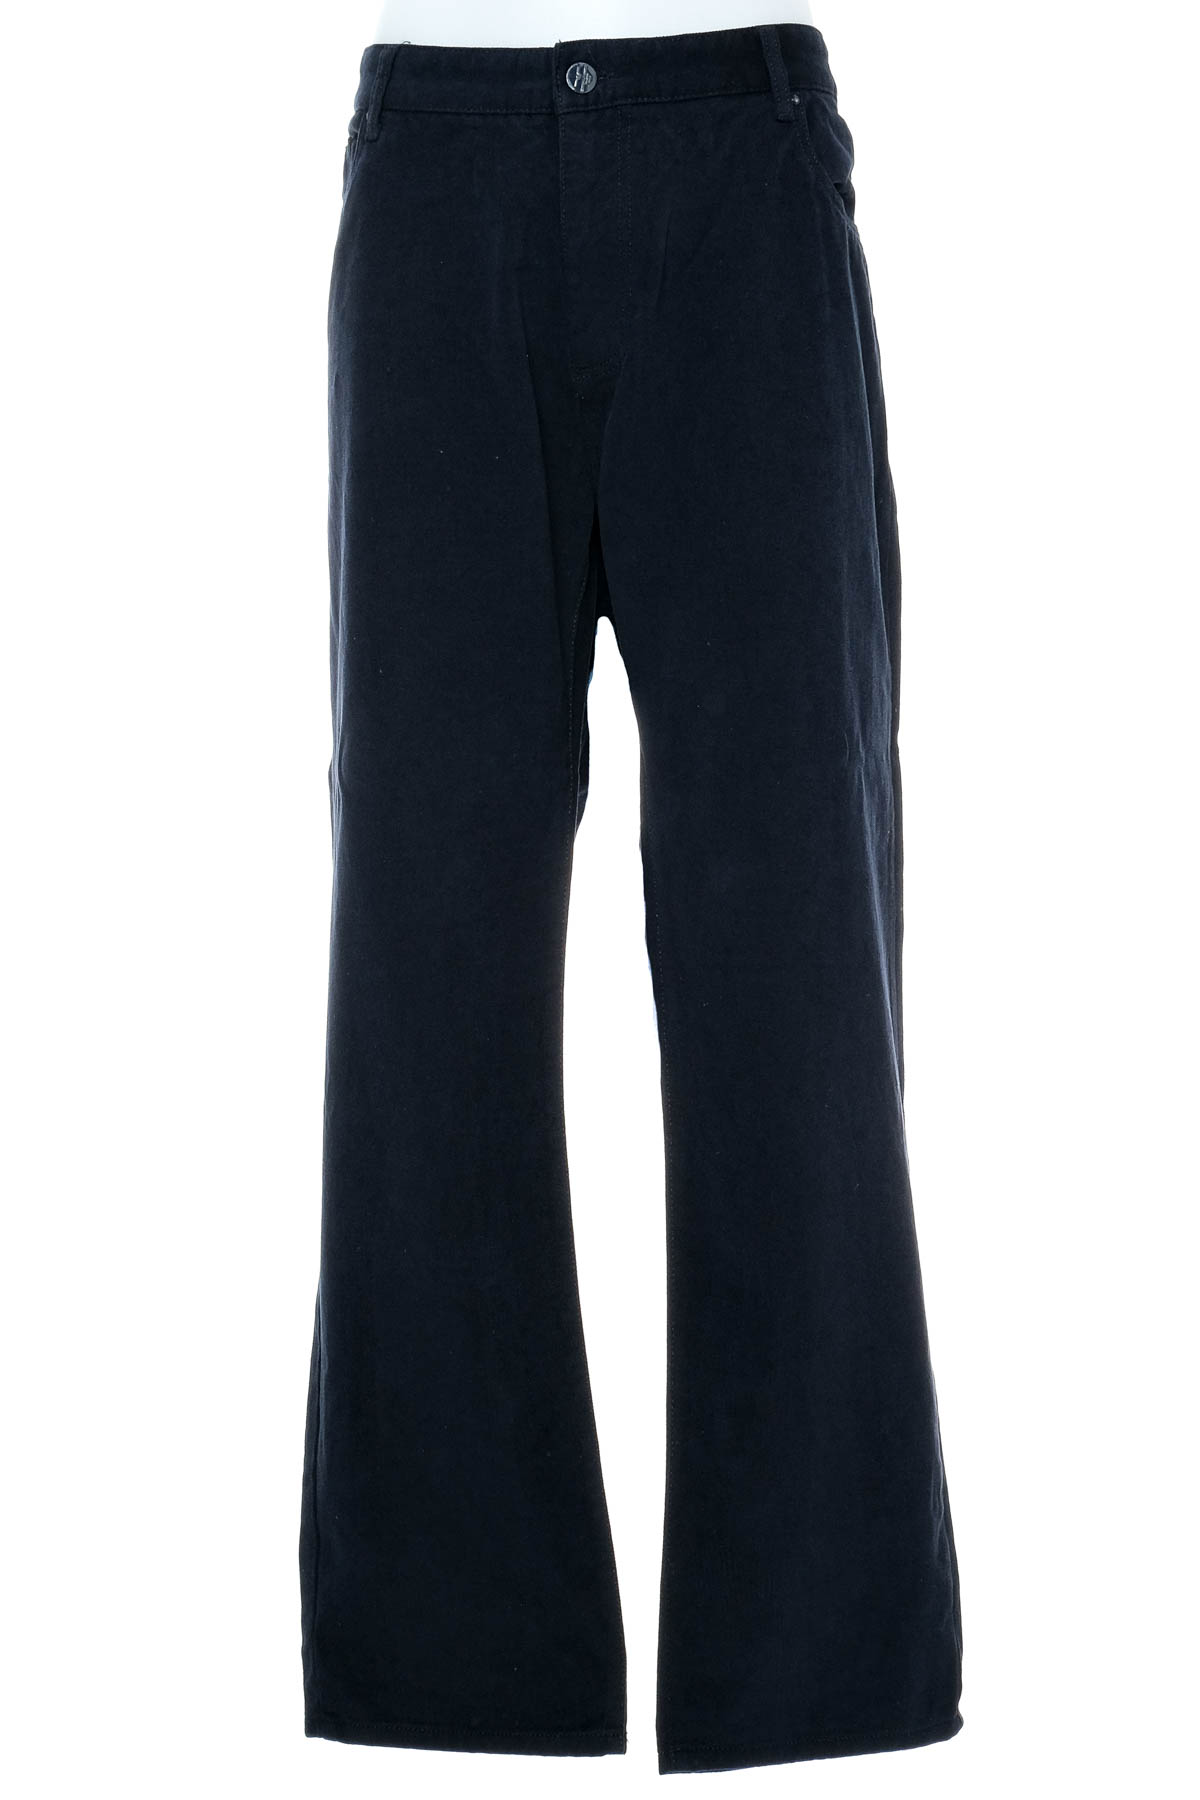 Ανδρικά παντελόνια - Armani Jeans - 0